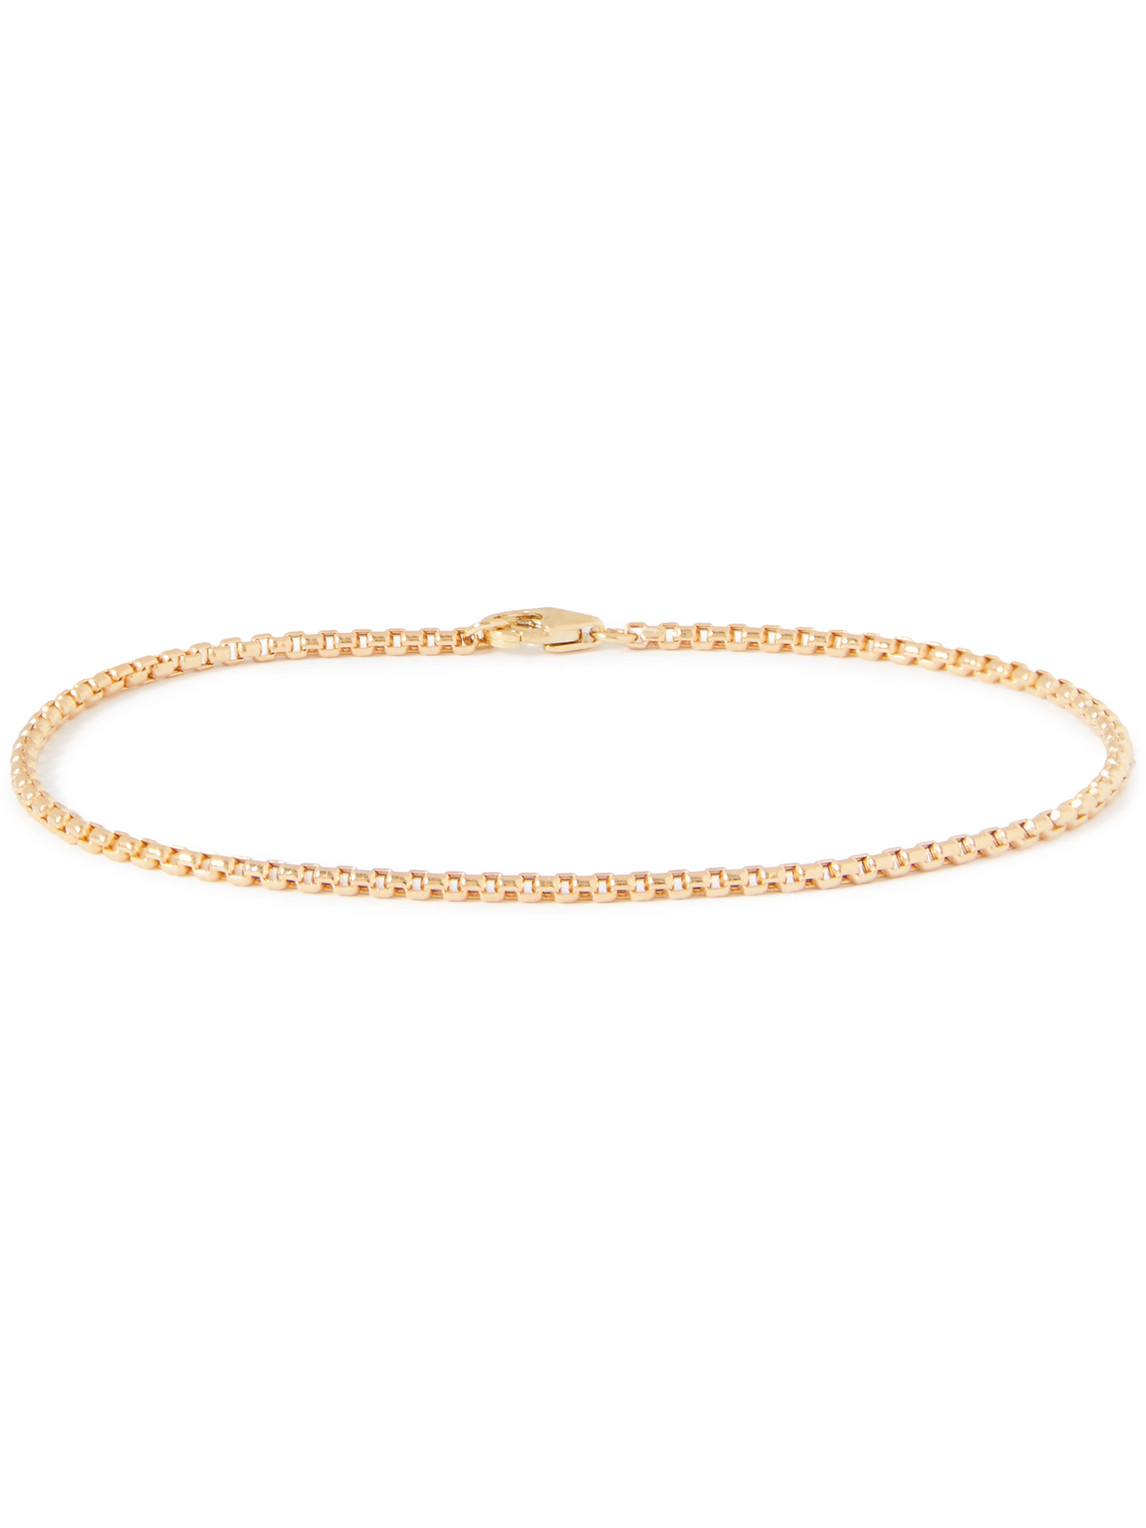 Venetian Gold Chain Bracelet